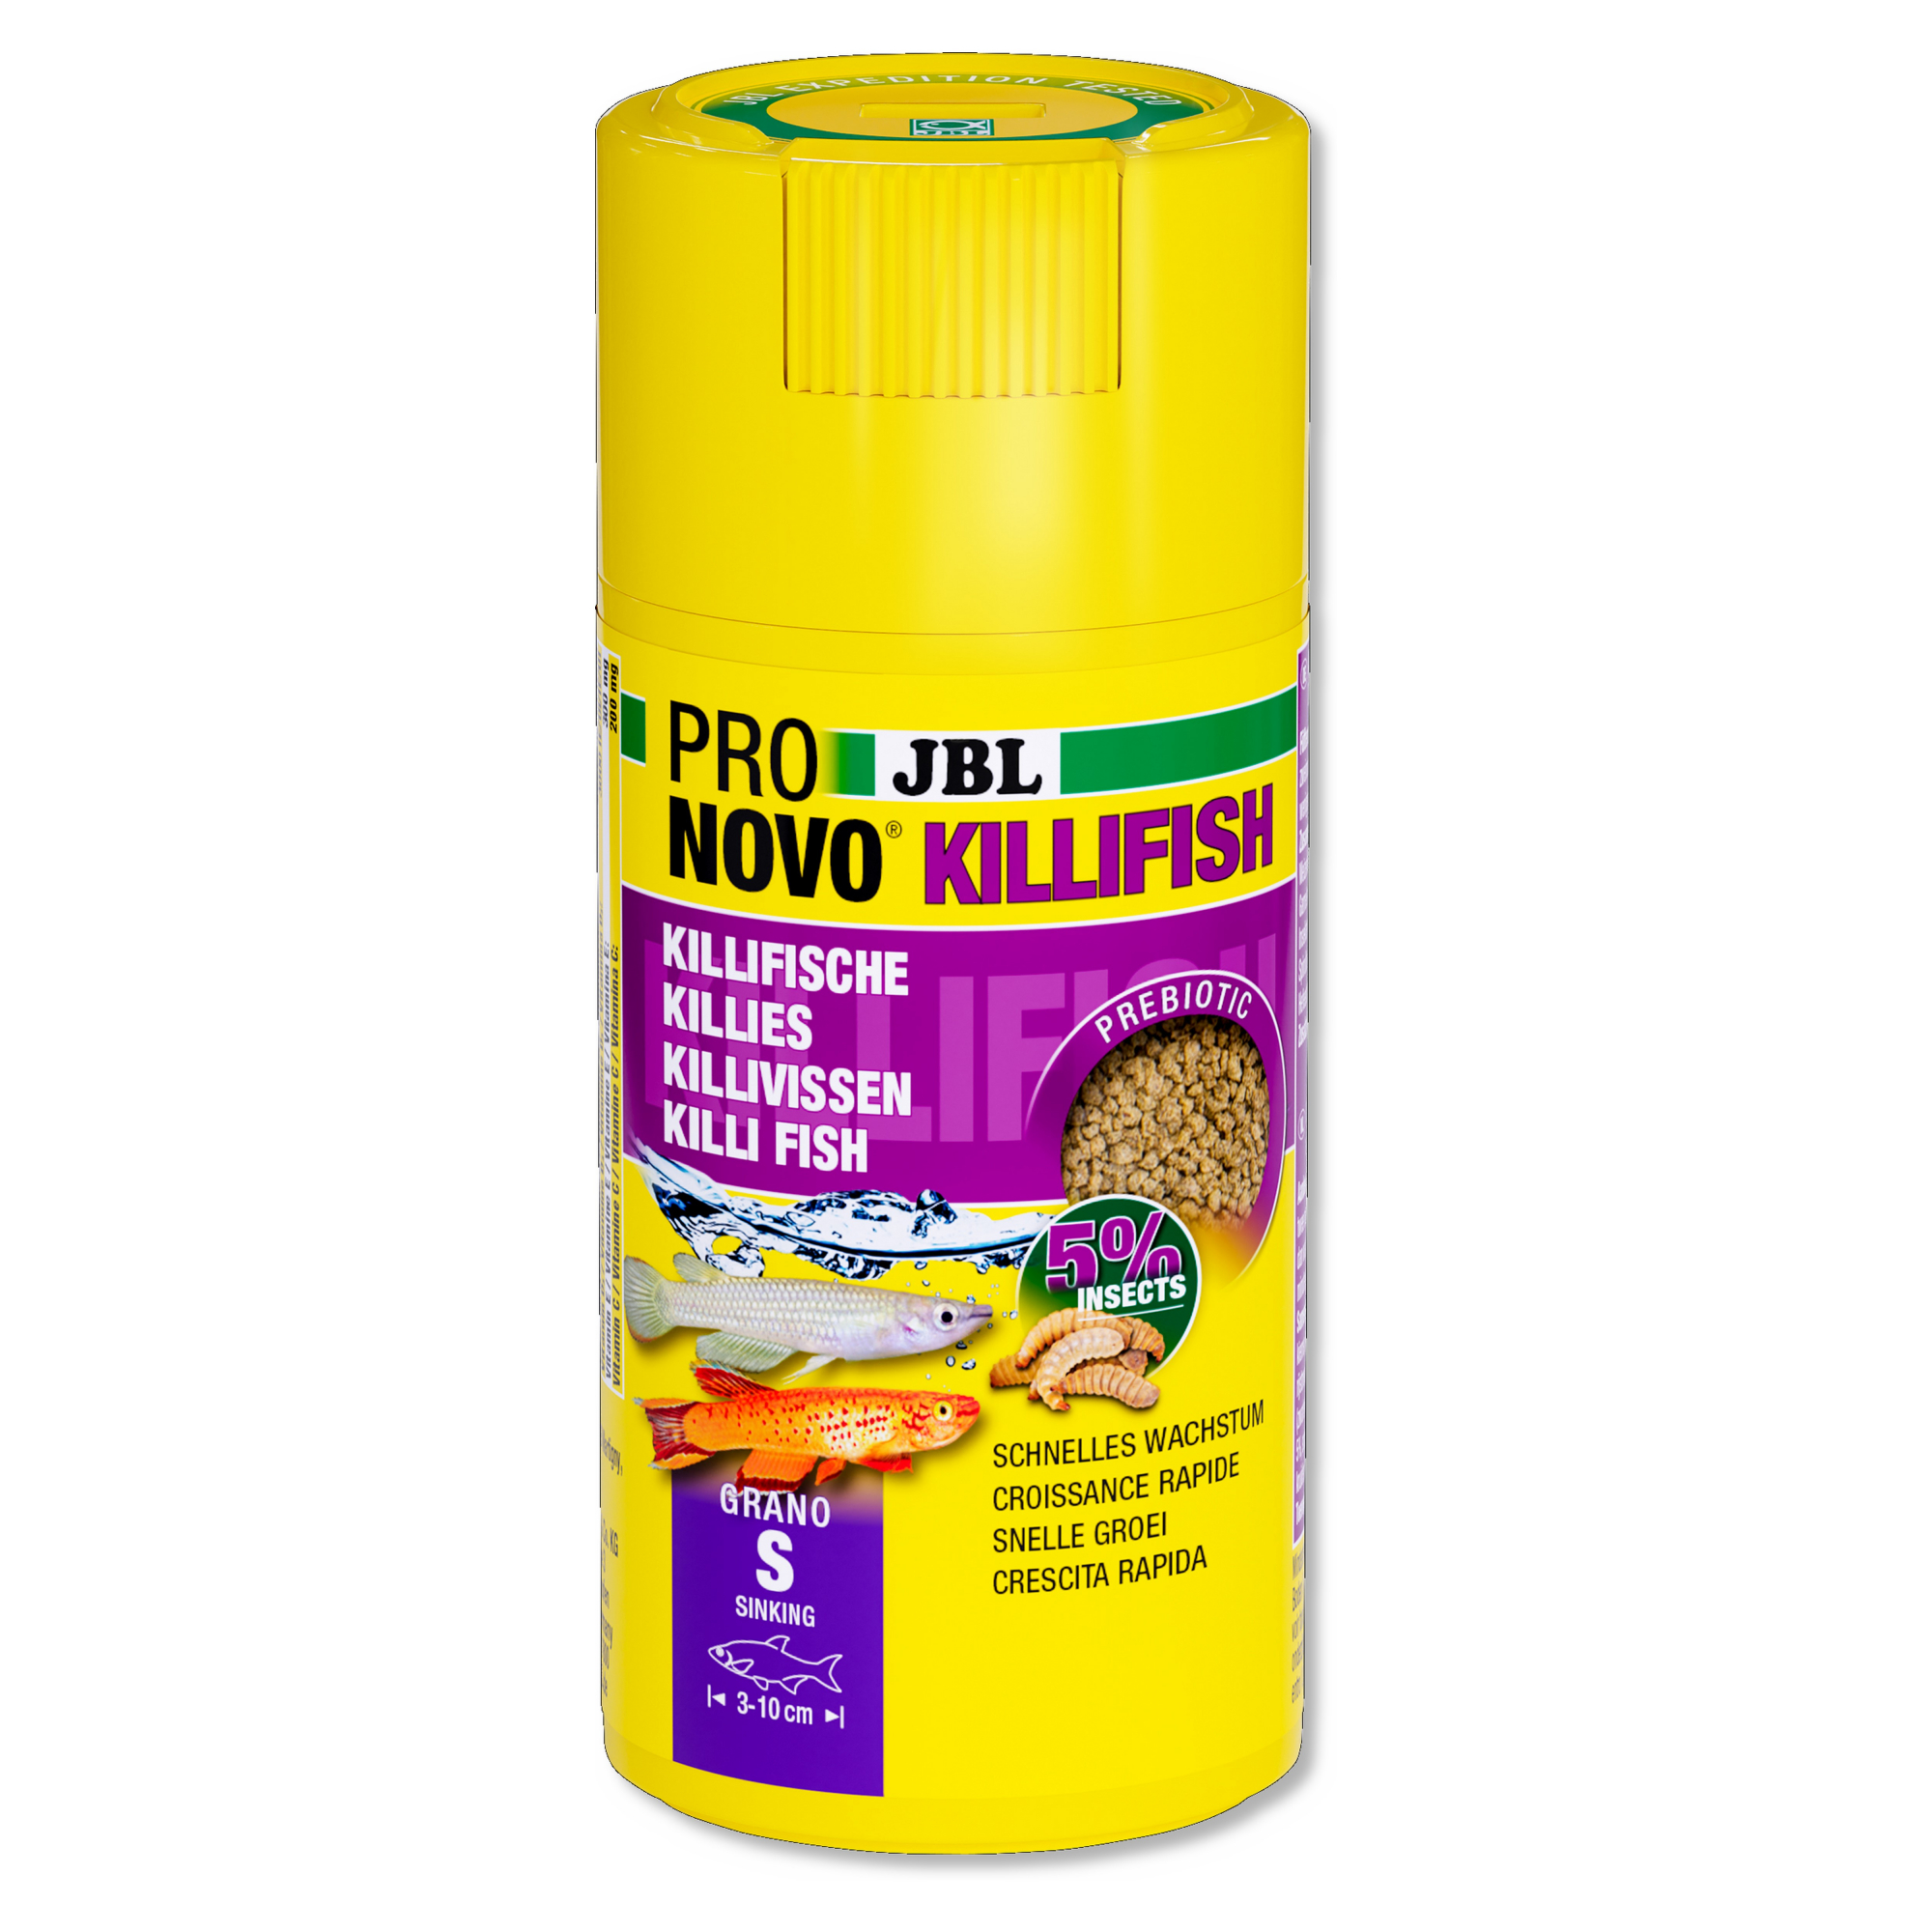 JBL Pronovo Killifish Grano S Click Fischpellets für Killi